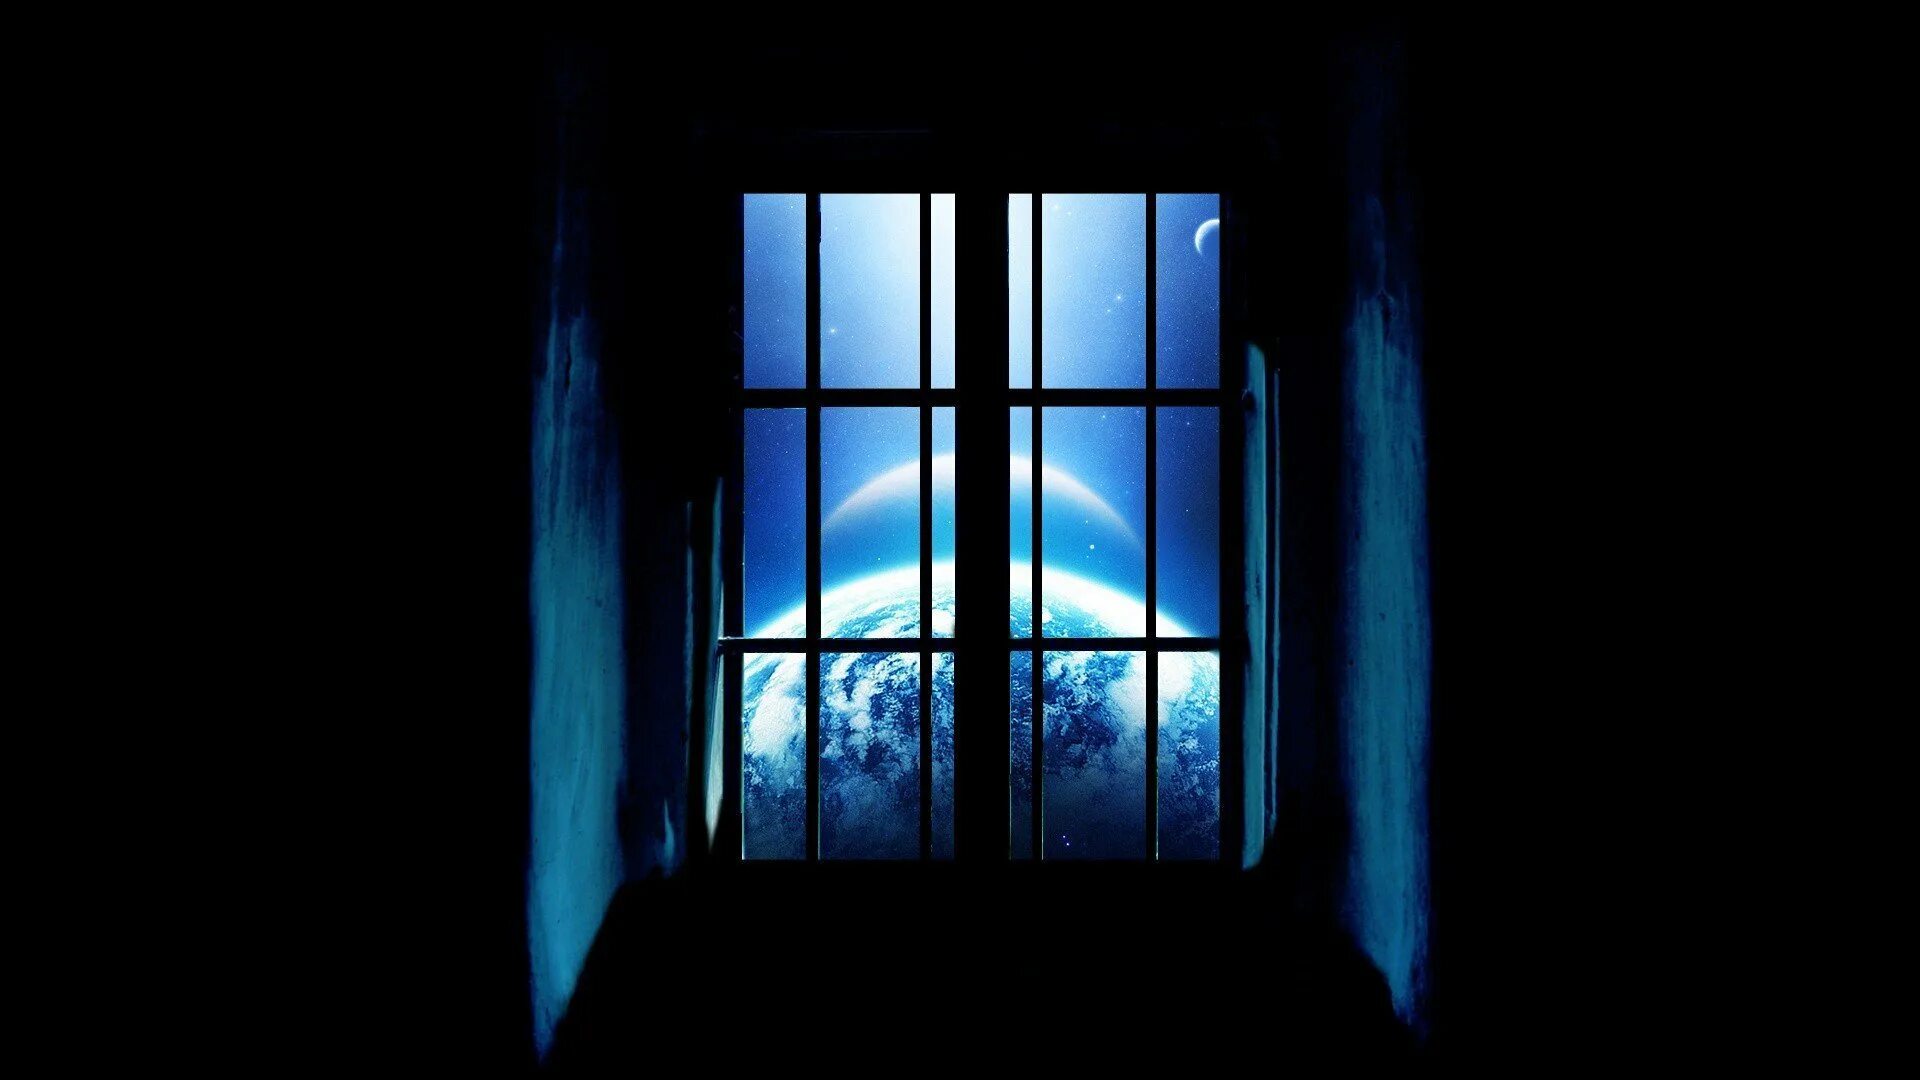 Compiled windows. Окно ночью. Ночное окно. Темное окно. Синее окно.